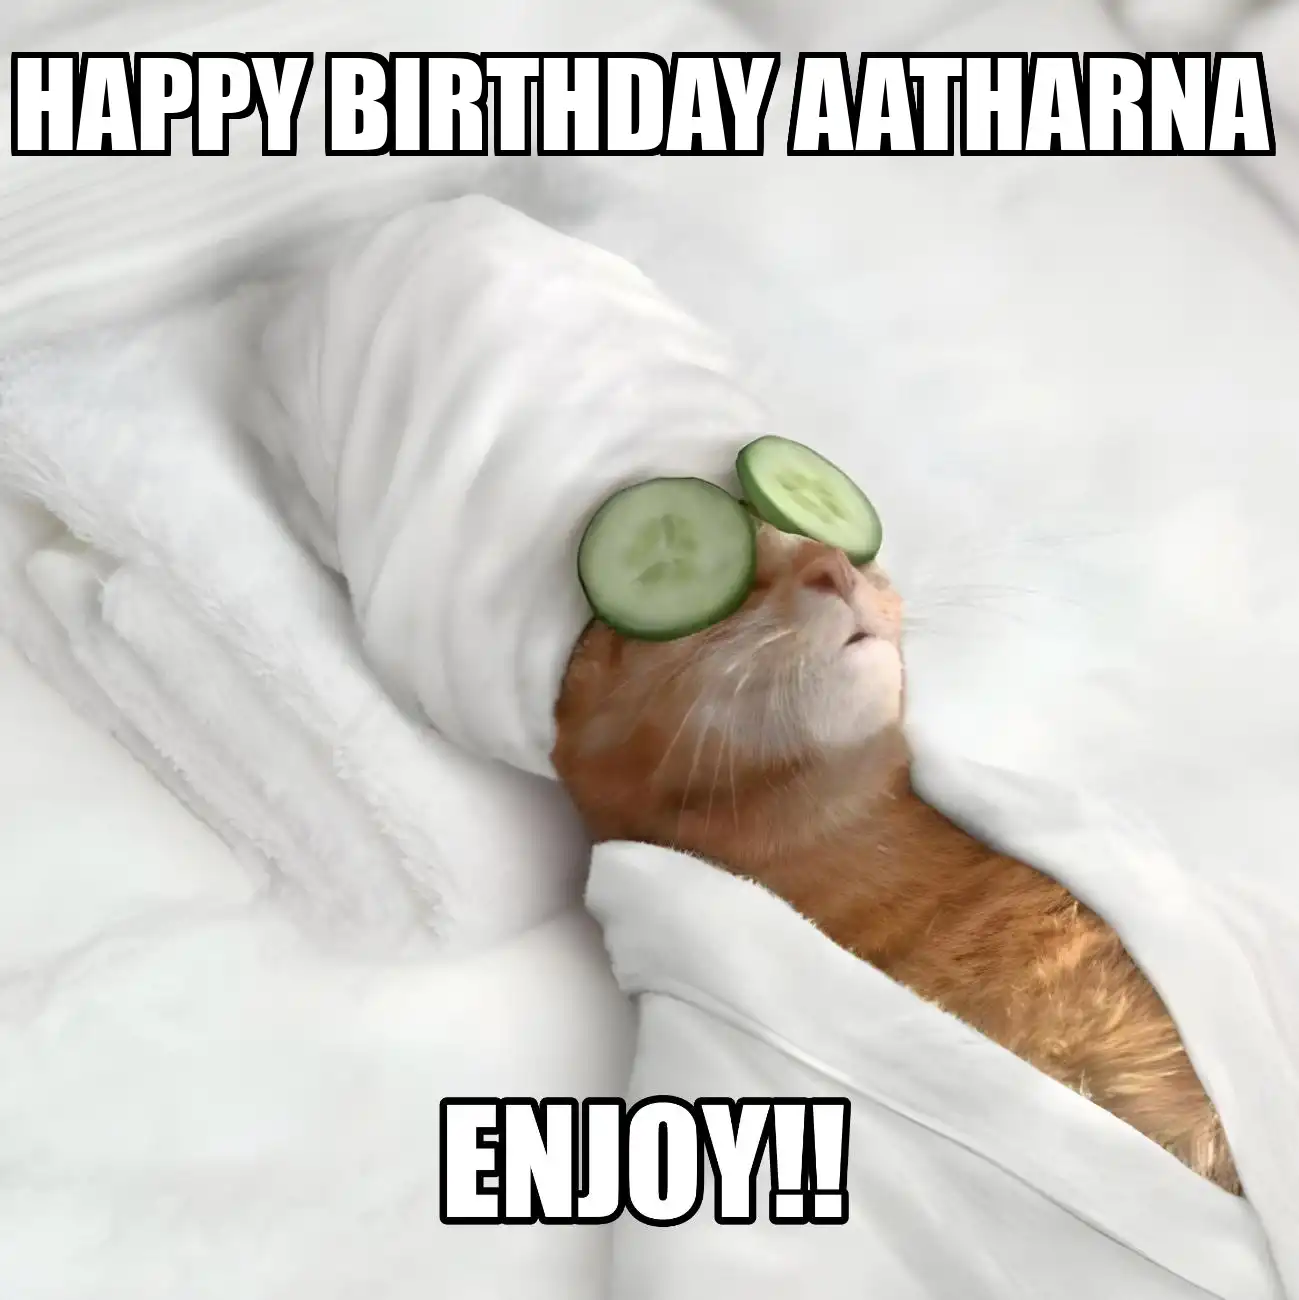 Happy Birthday Aatharna Enjoy Cat Meme